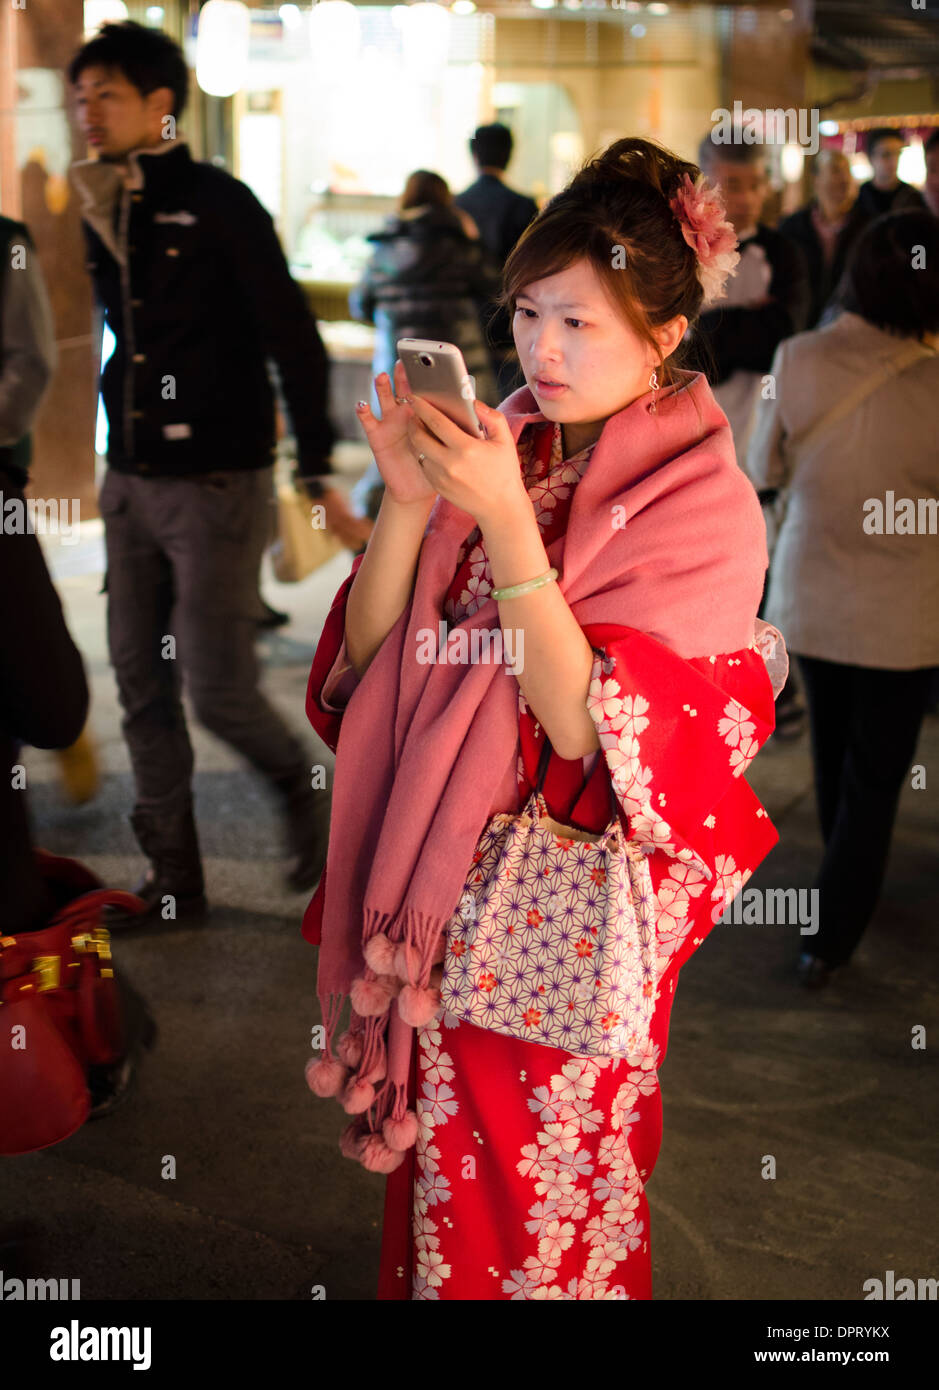 Chica japonesa vistiendo un florido kimono rojo de invierno en una fresca tarde de otoño, mientras que el uso de un smartphone. Foto de stock